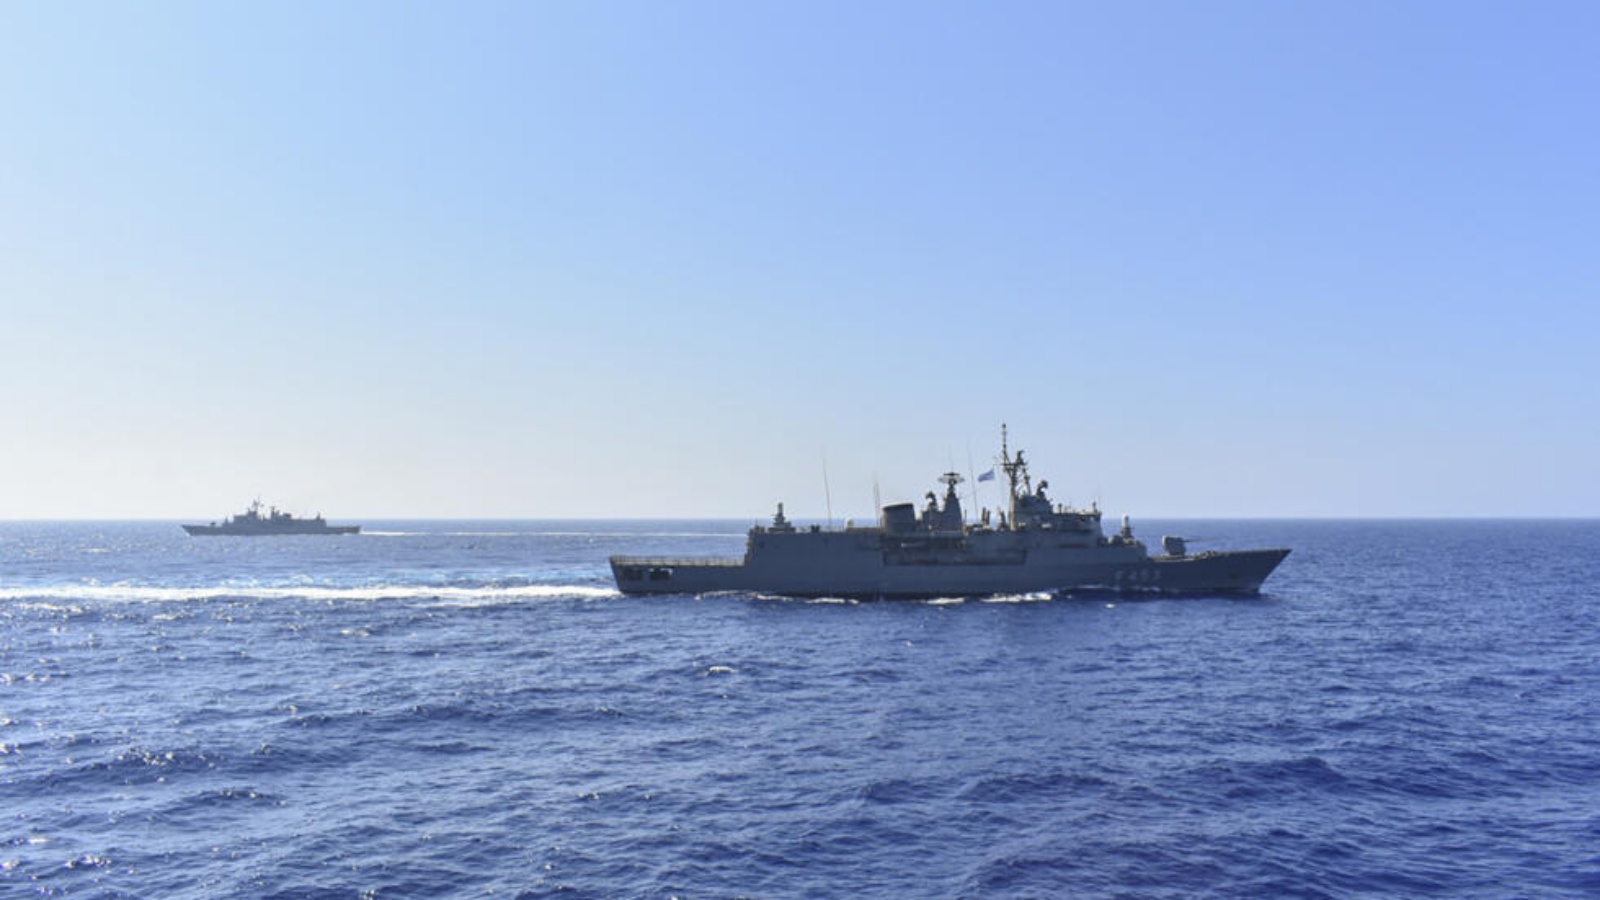 صورة نشرتها وزارة الدفاع الوطني اليونانية في 26 آب (أغسطس) 2020 تظهر فرقاطة تابعة للبحرية اليونانية (الأمامية) وسفينة أخرى تشارك في مناورة عسكرية في شرق البحر الأبيض المتوسط في 25 آب (أغسطس) 2020